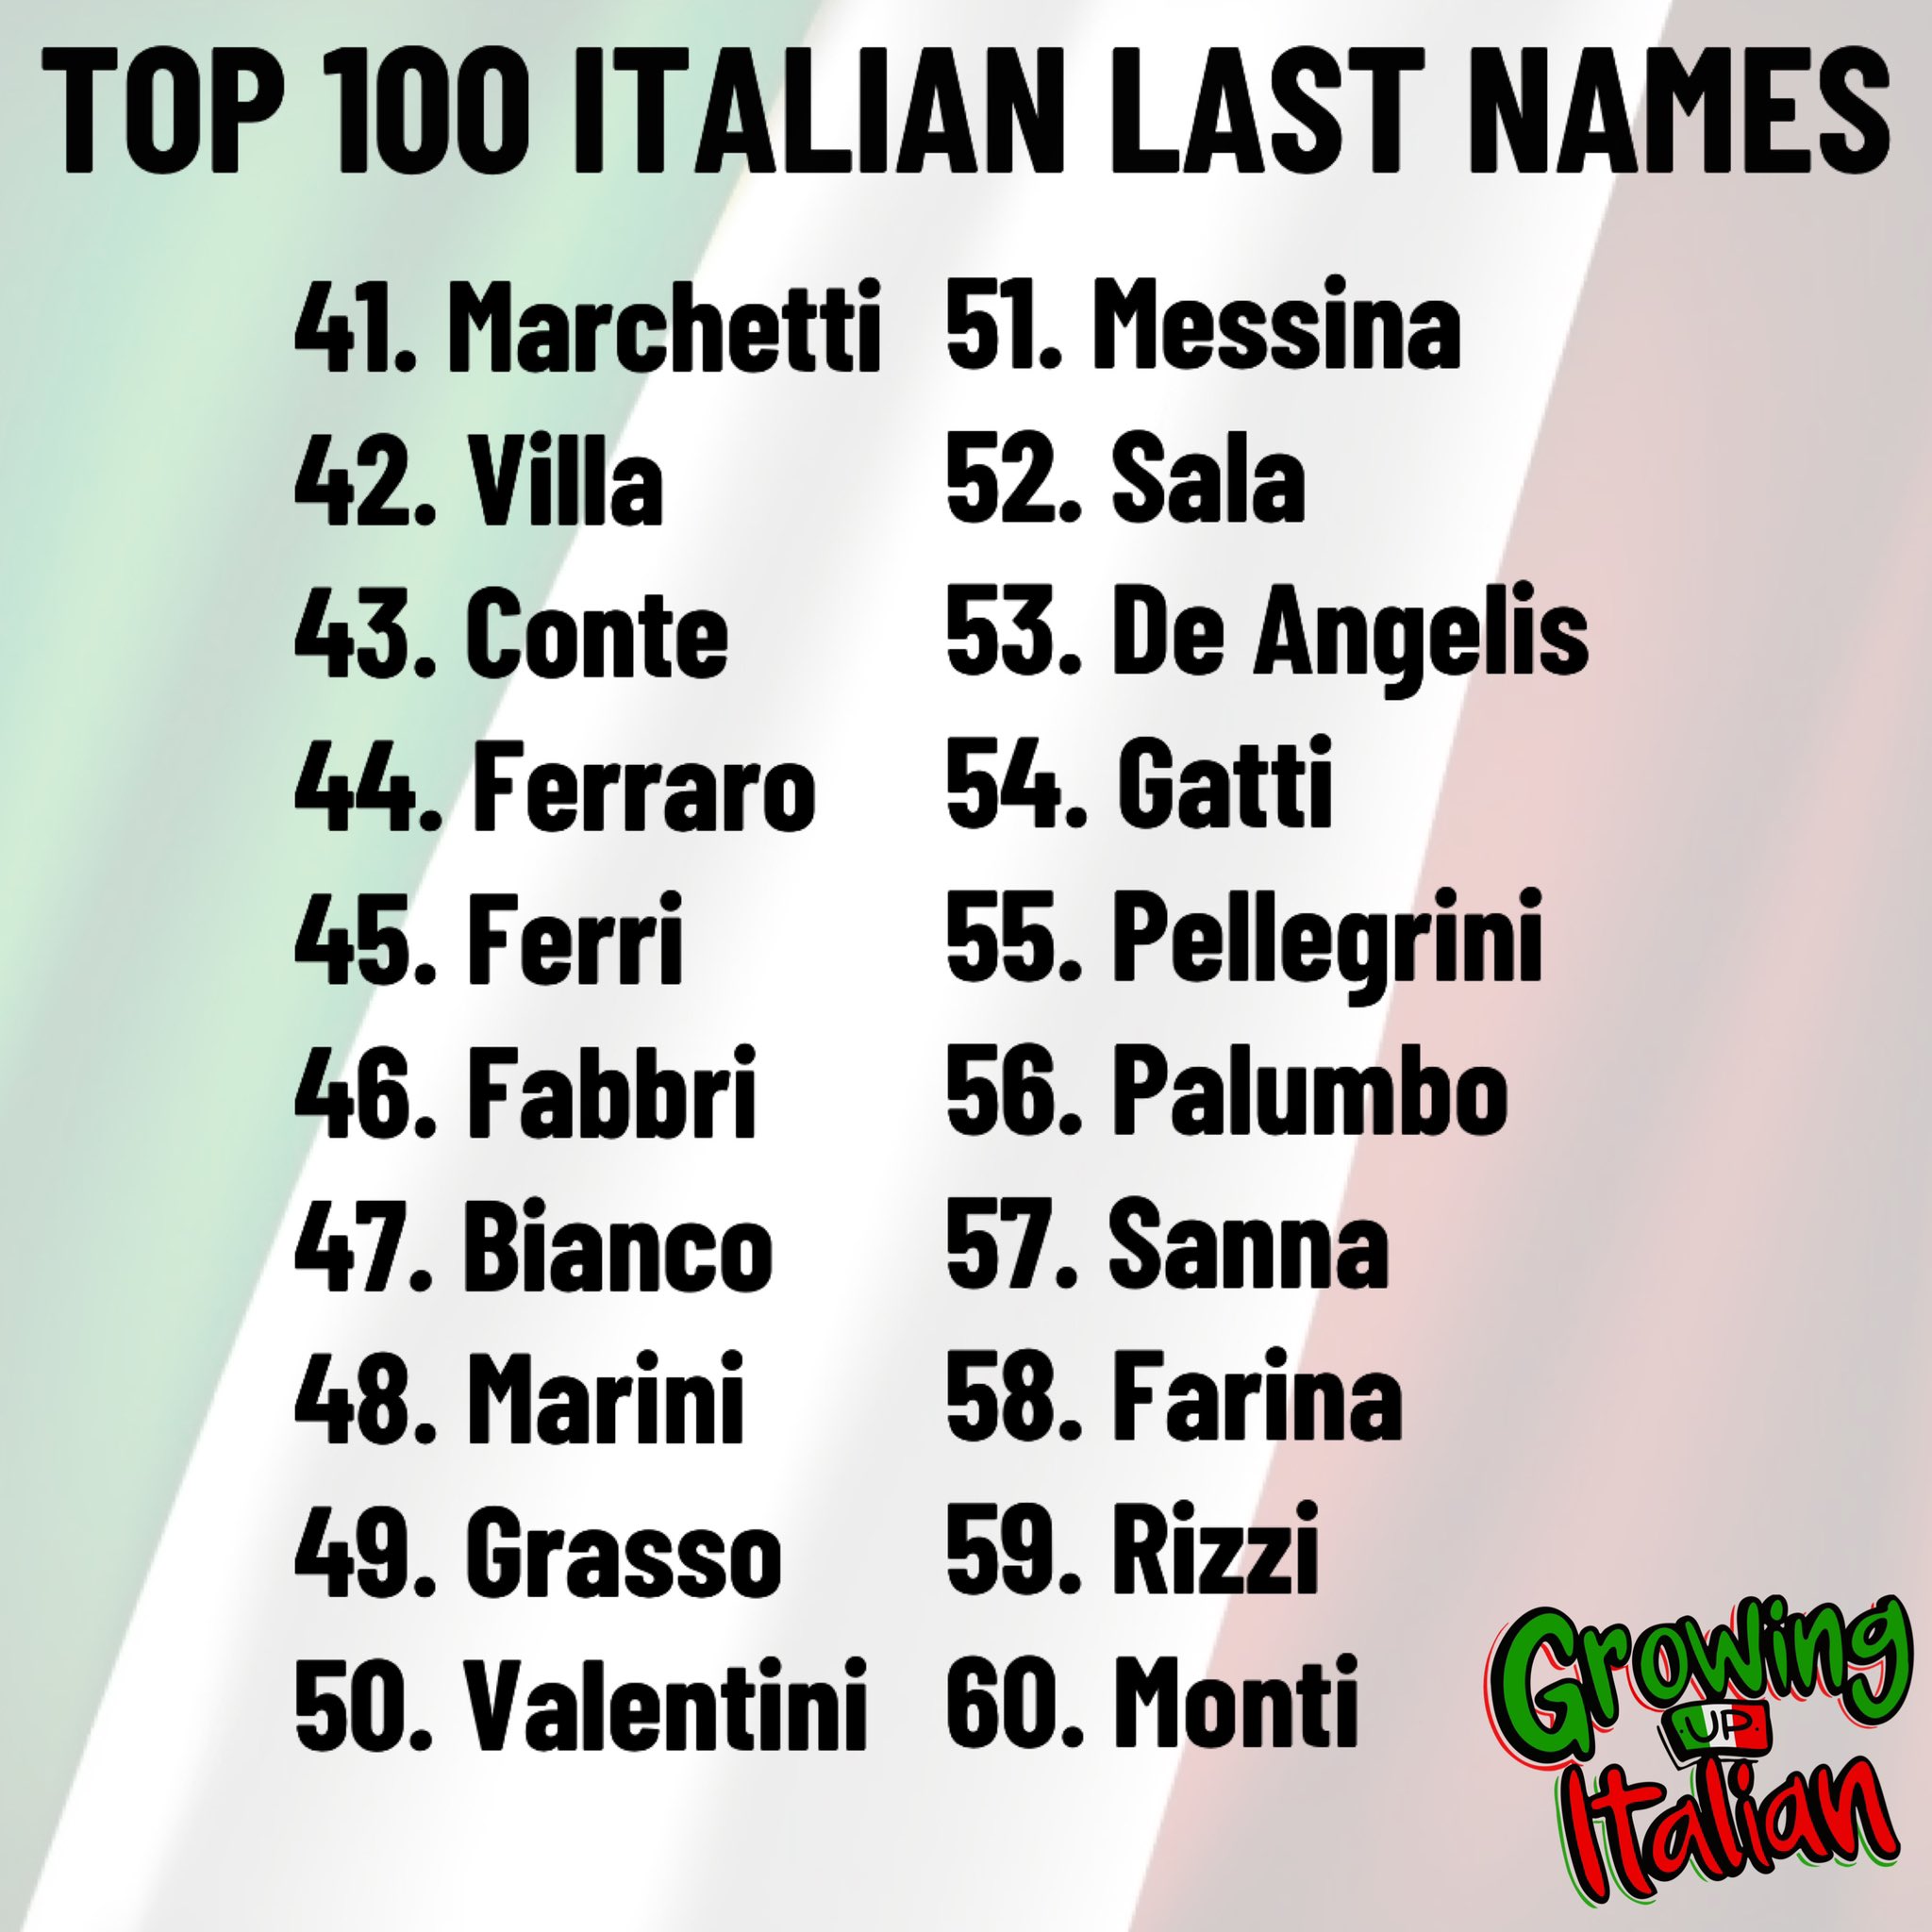 Musling deform kantsten Growing Up Italian on Twitter: "Top 100 Italian Last Names 🇮🇹  https://t.co/uTKbuT4nhI" / Twitter